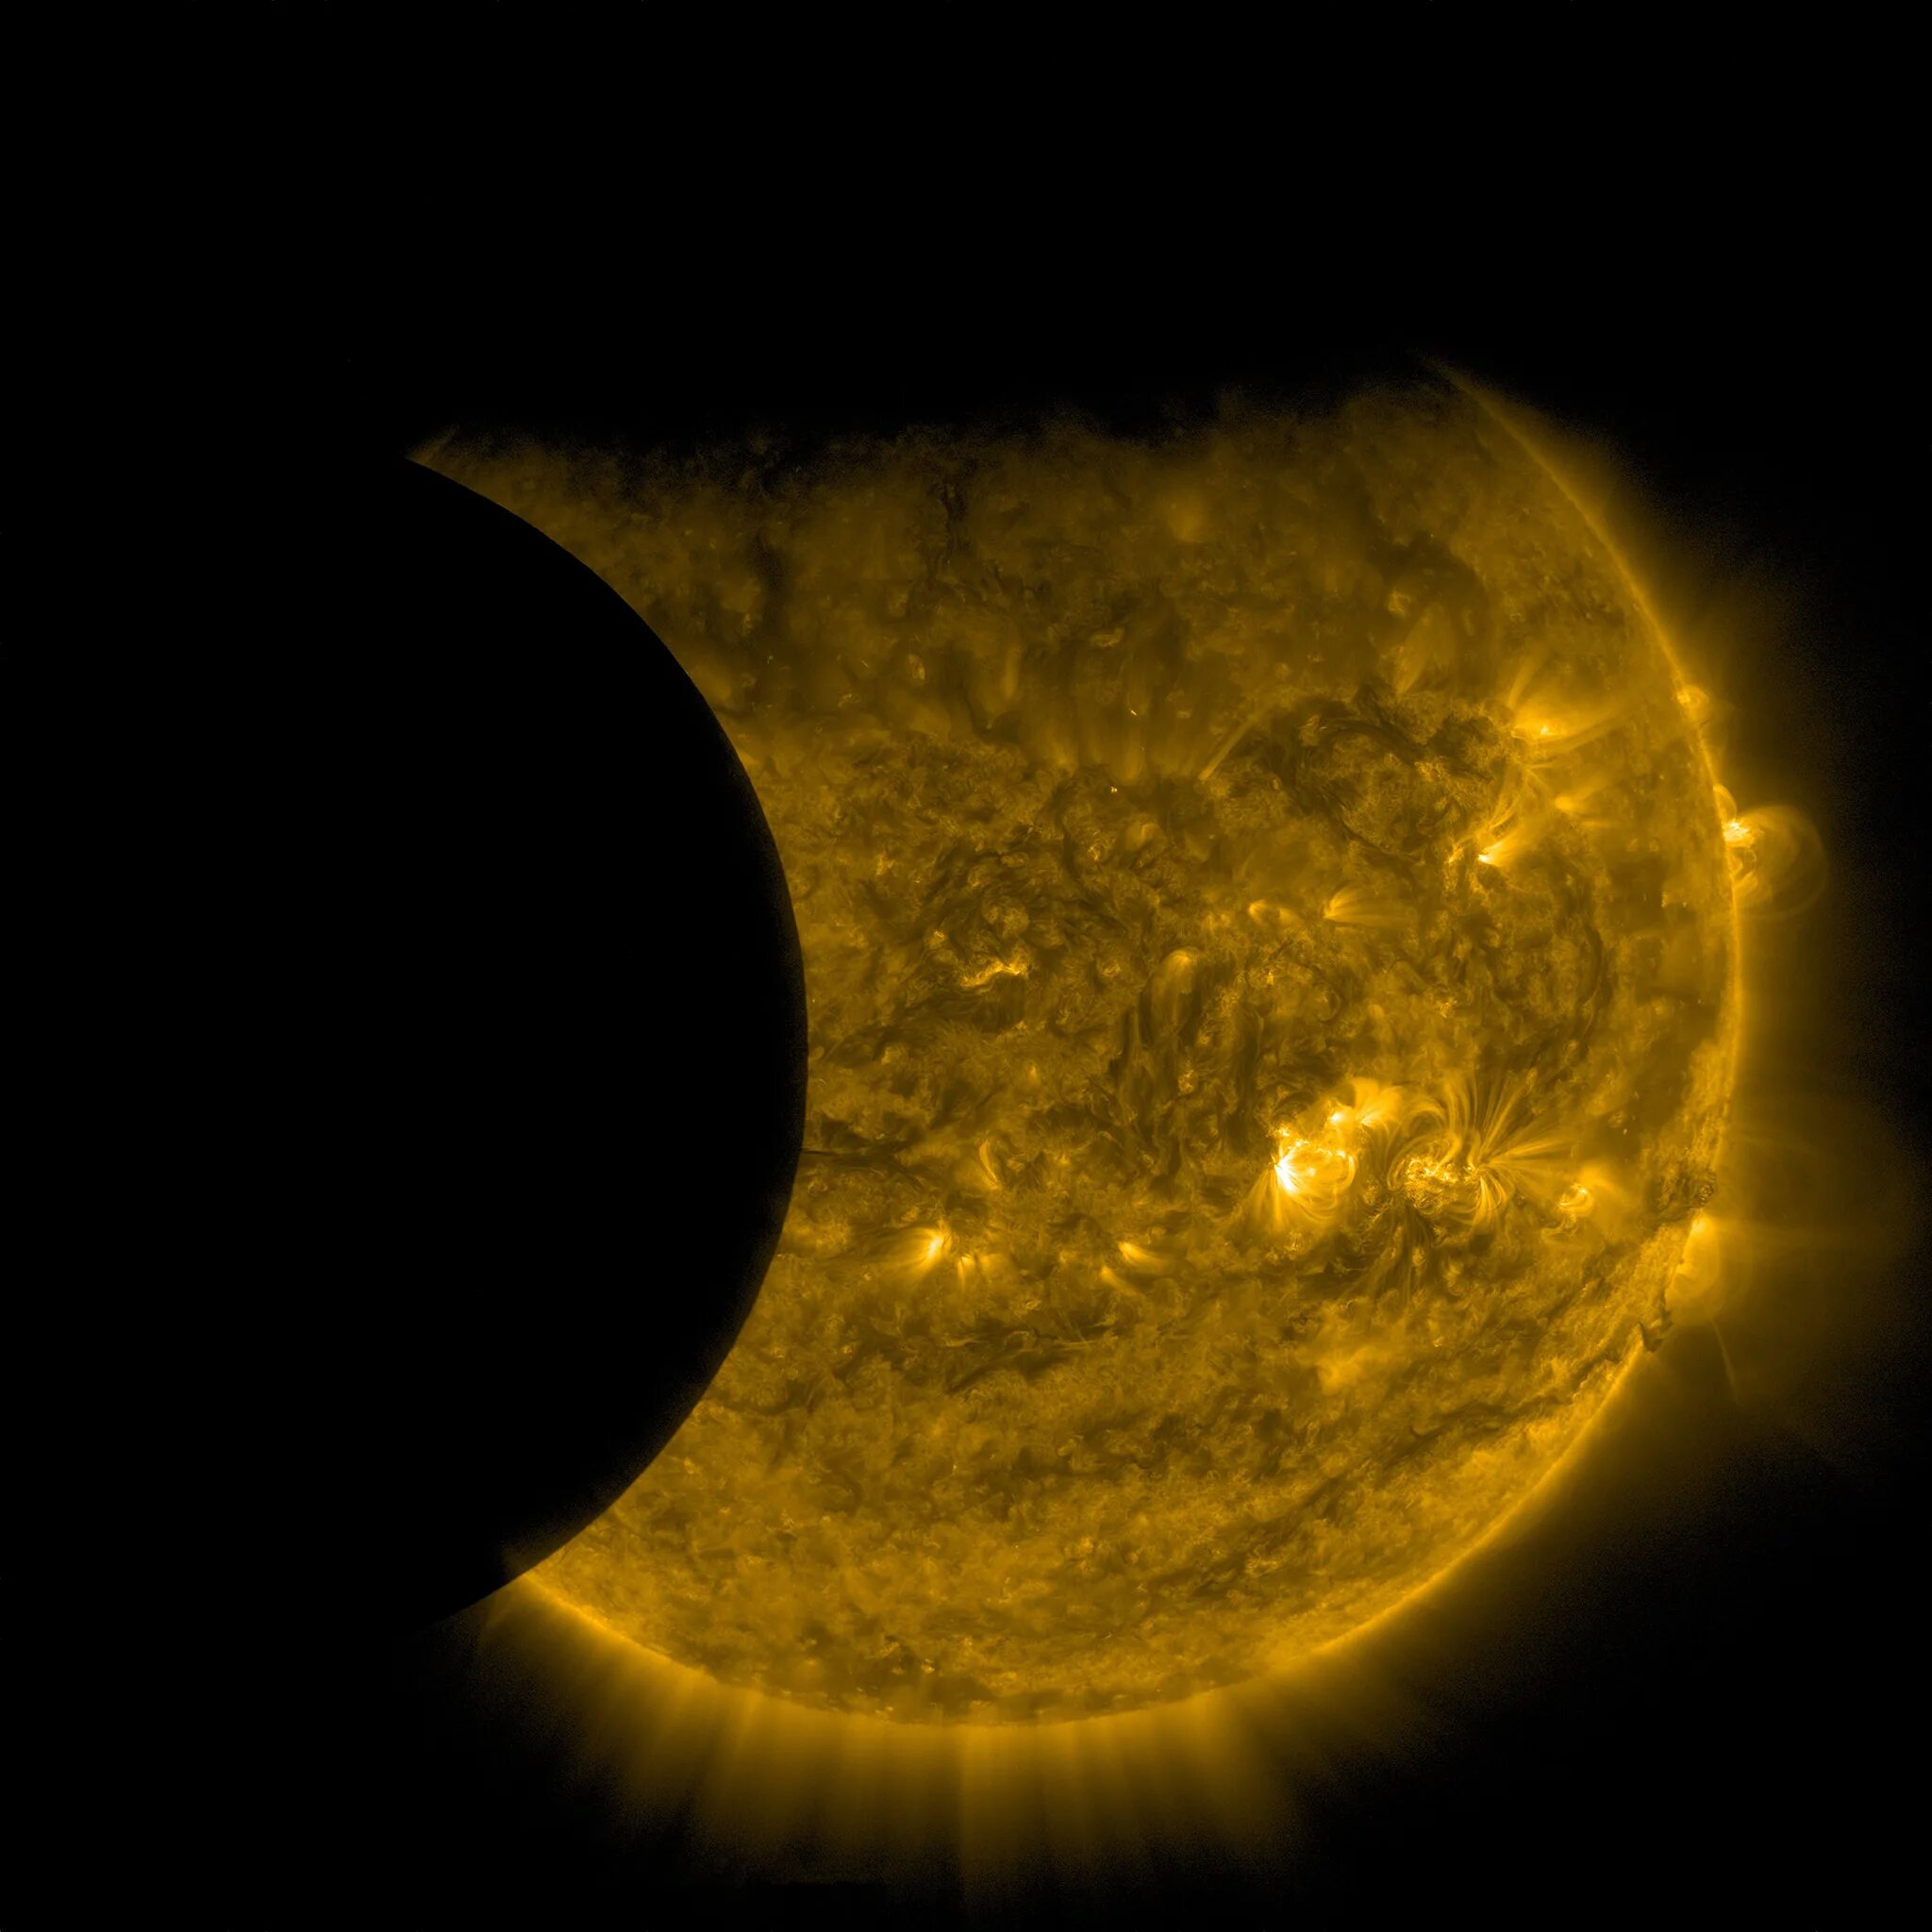 Снимки солнца. Солнечное затмение на Луне. Солнце вид из космоса. Солнечное затмение в космосе. Транзит луна солнце